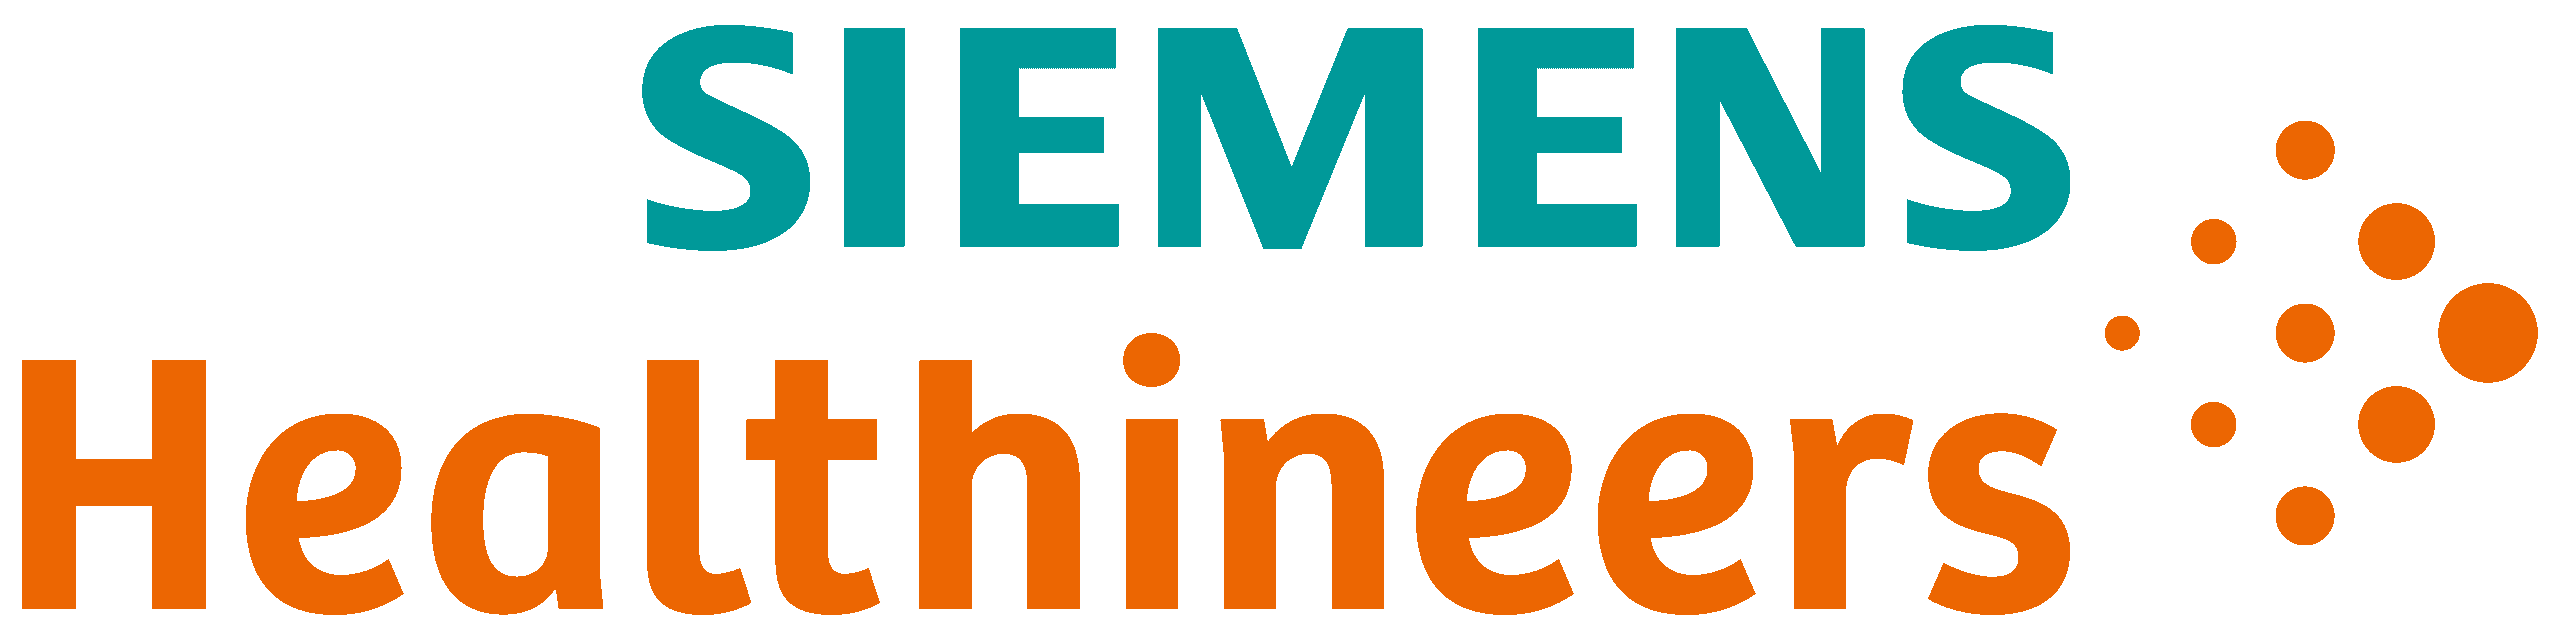 Siemens_Healthineers.png